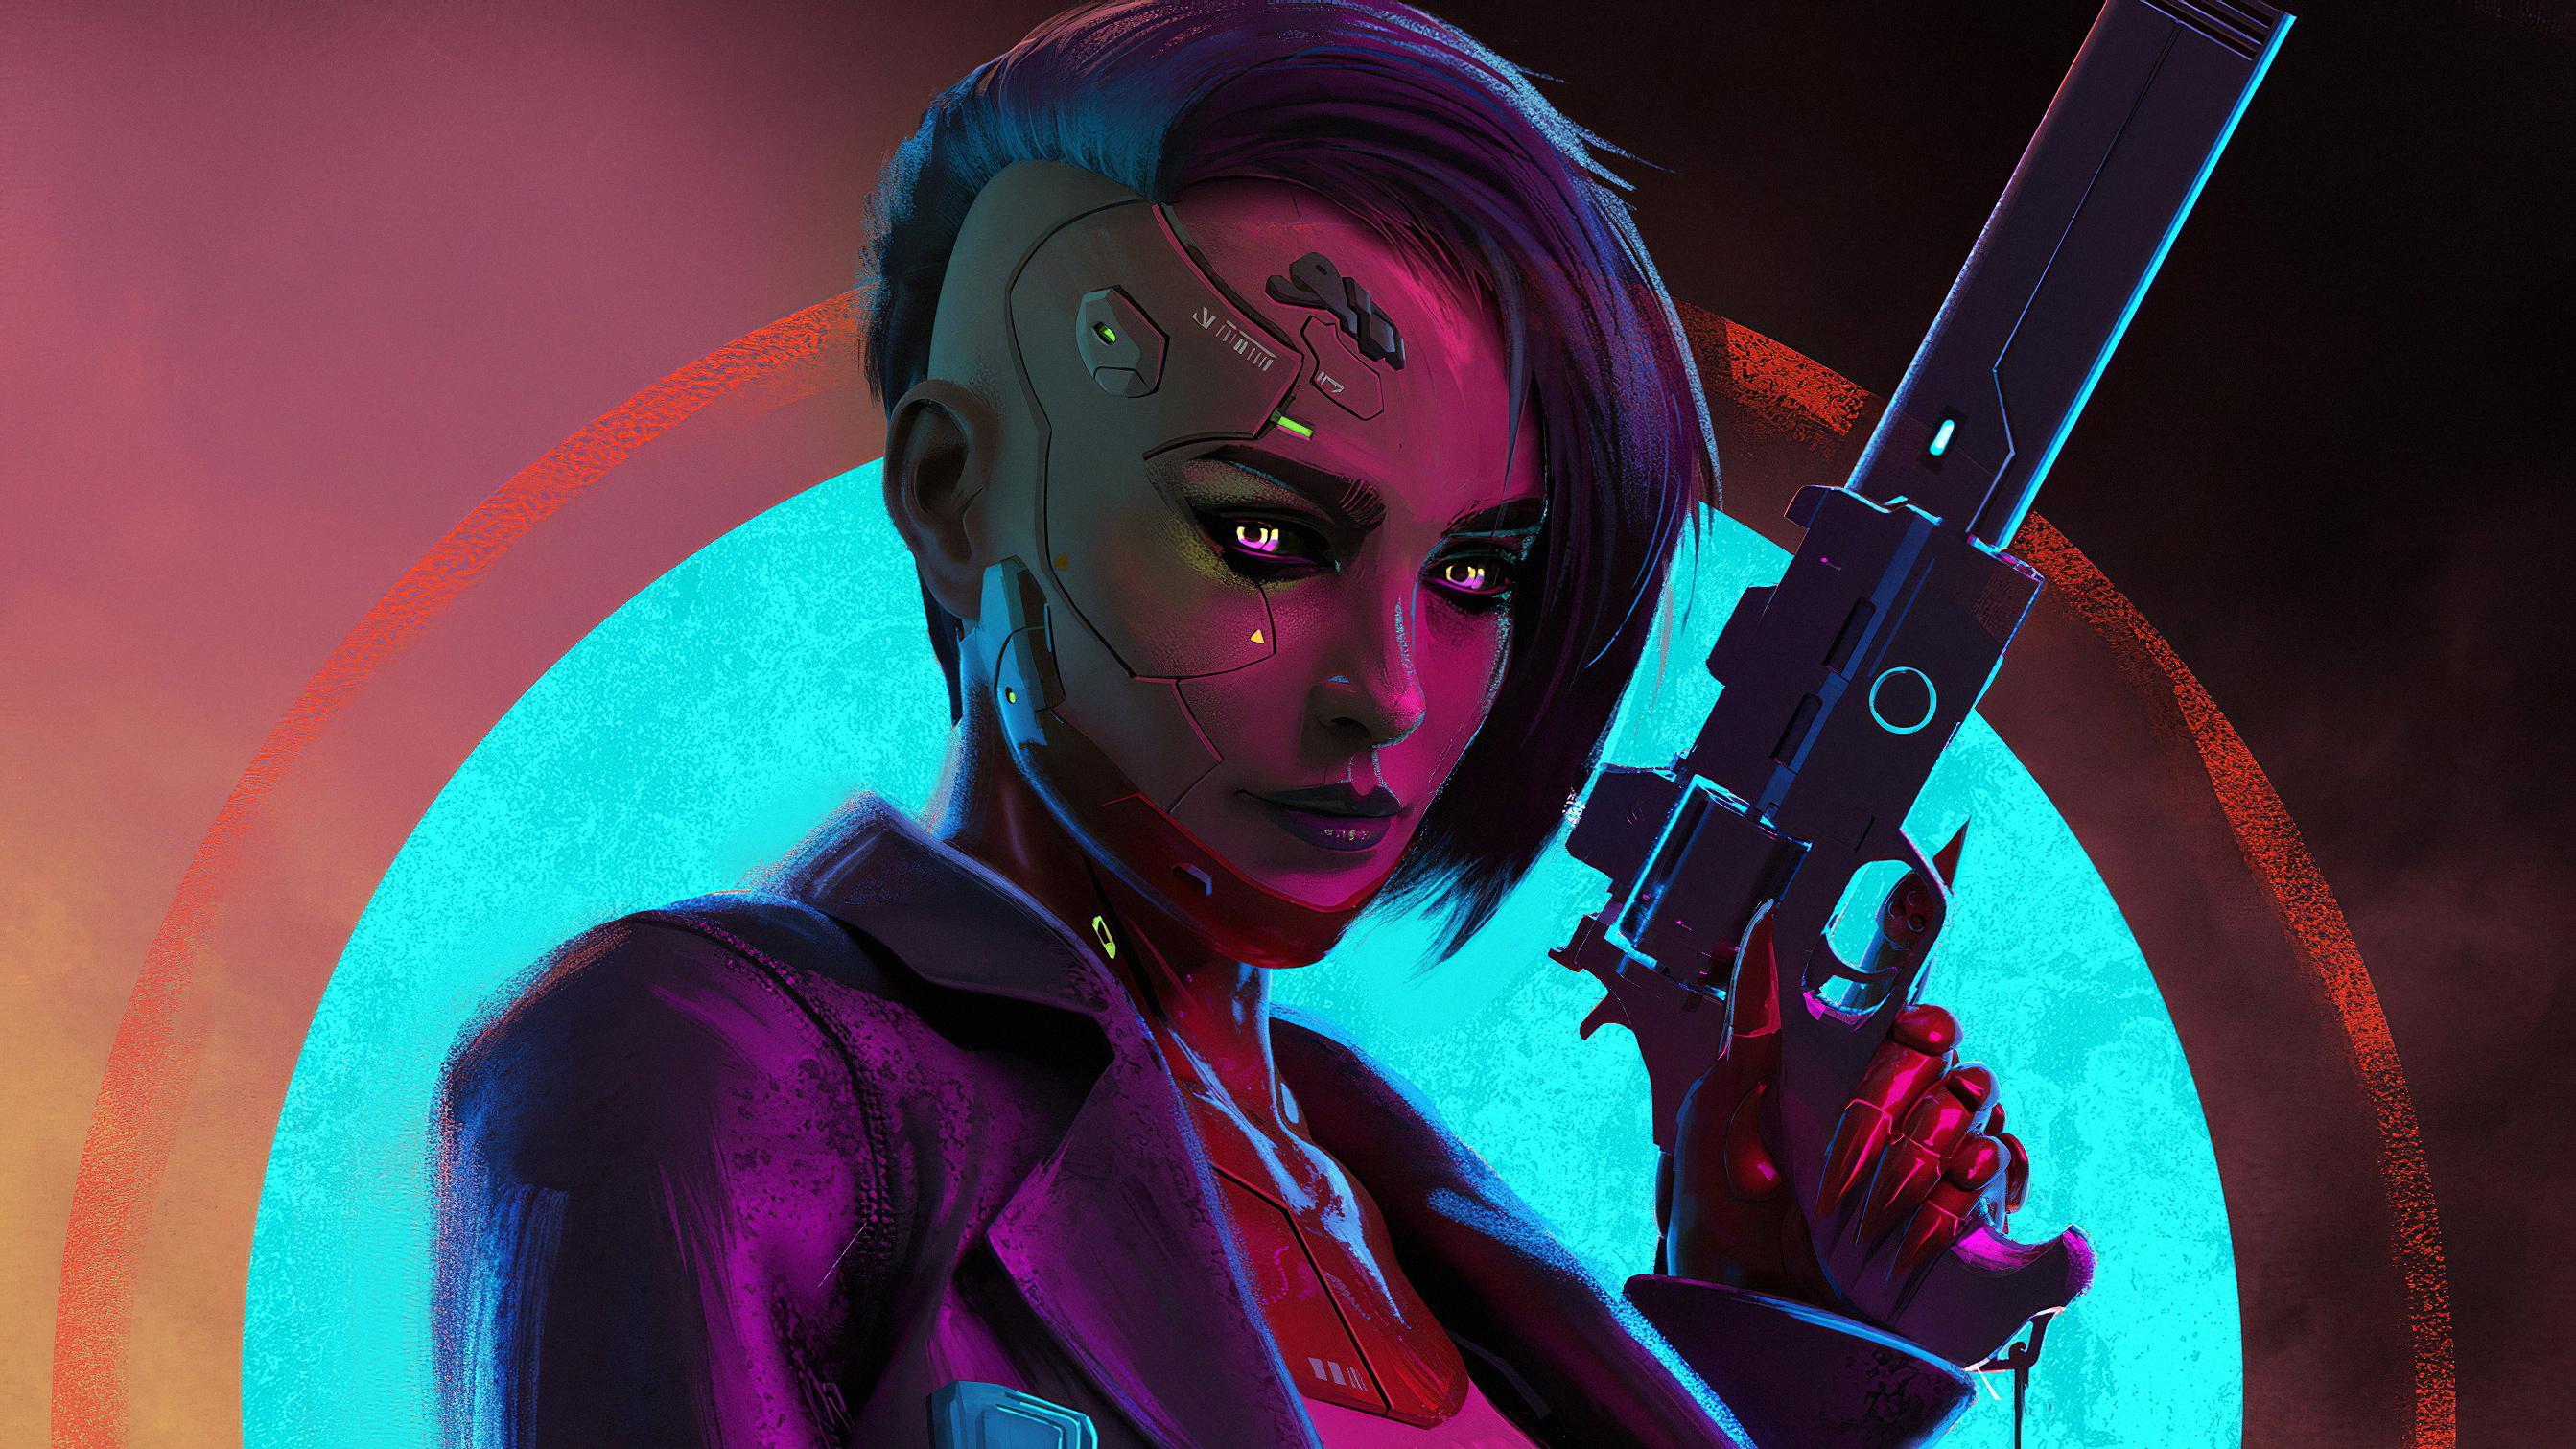 Cyberpunk Girl With Gun [3840x2160]